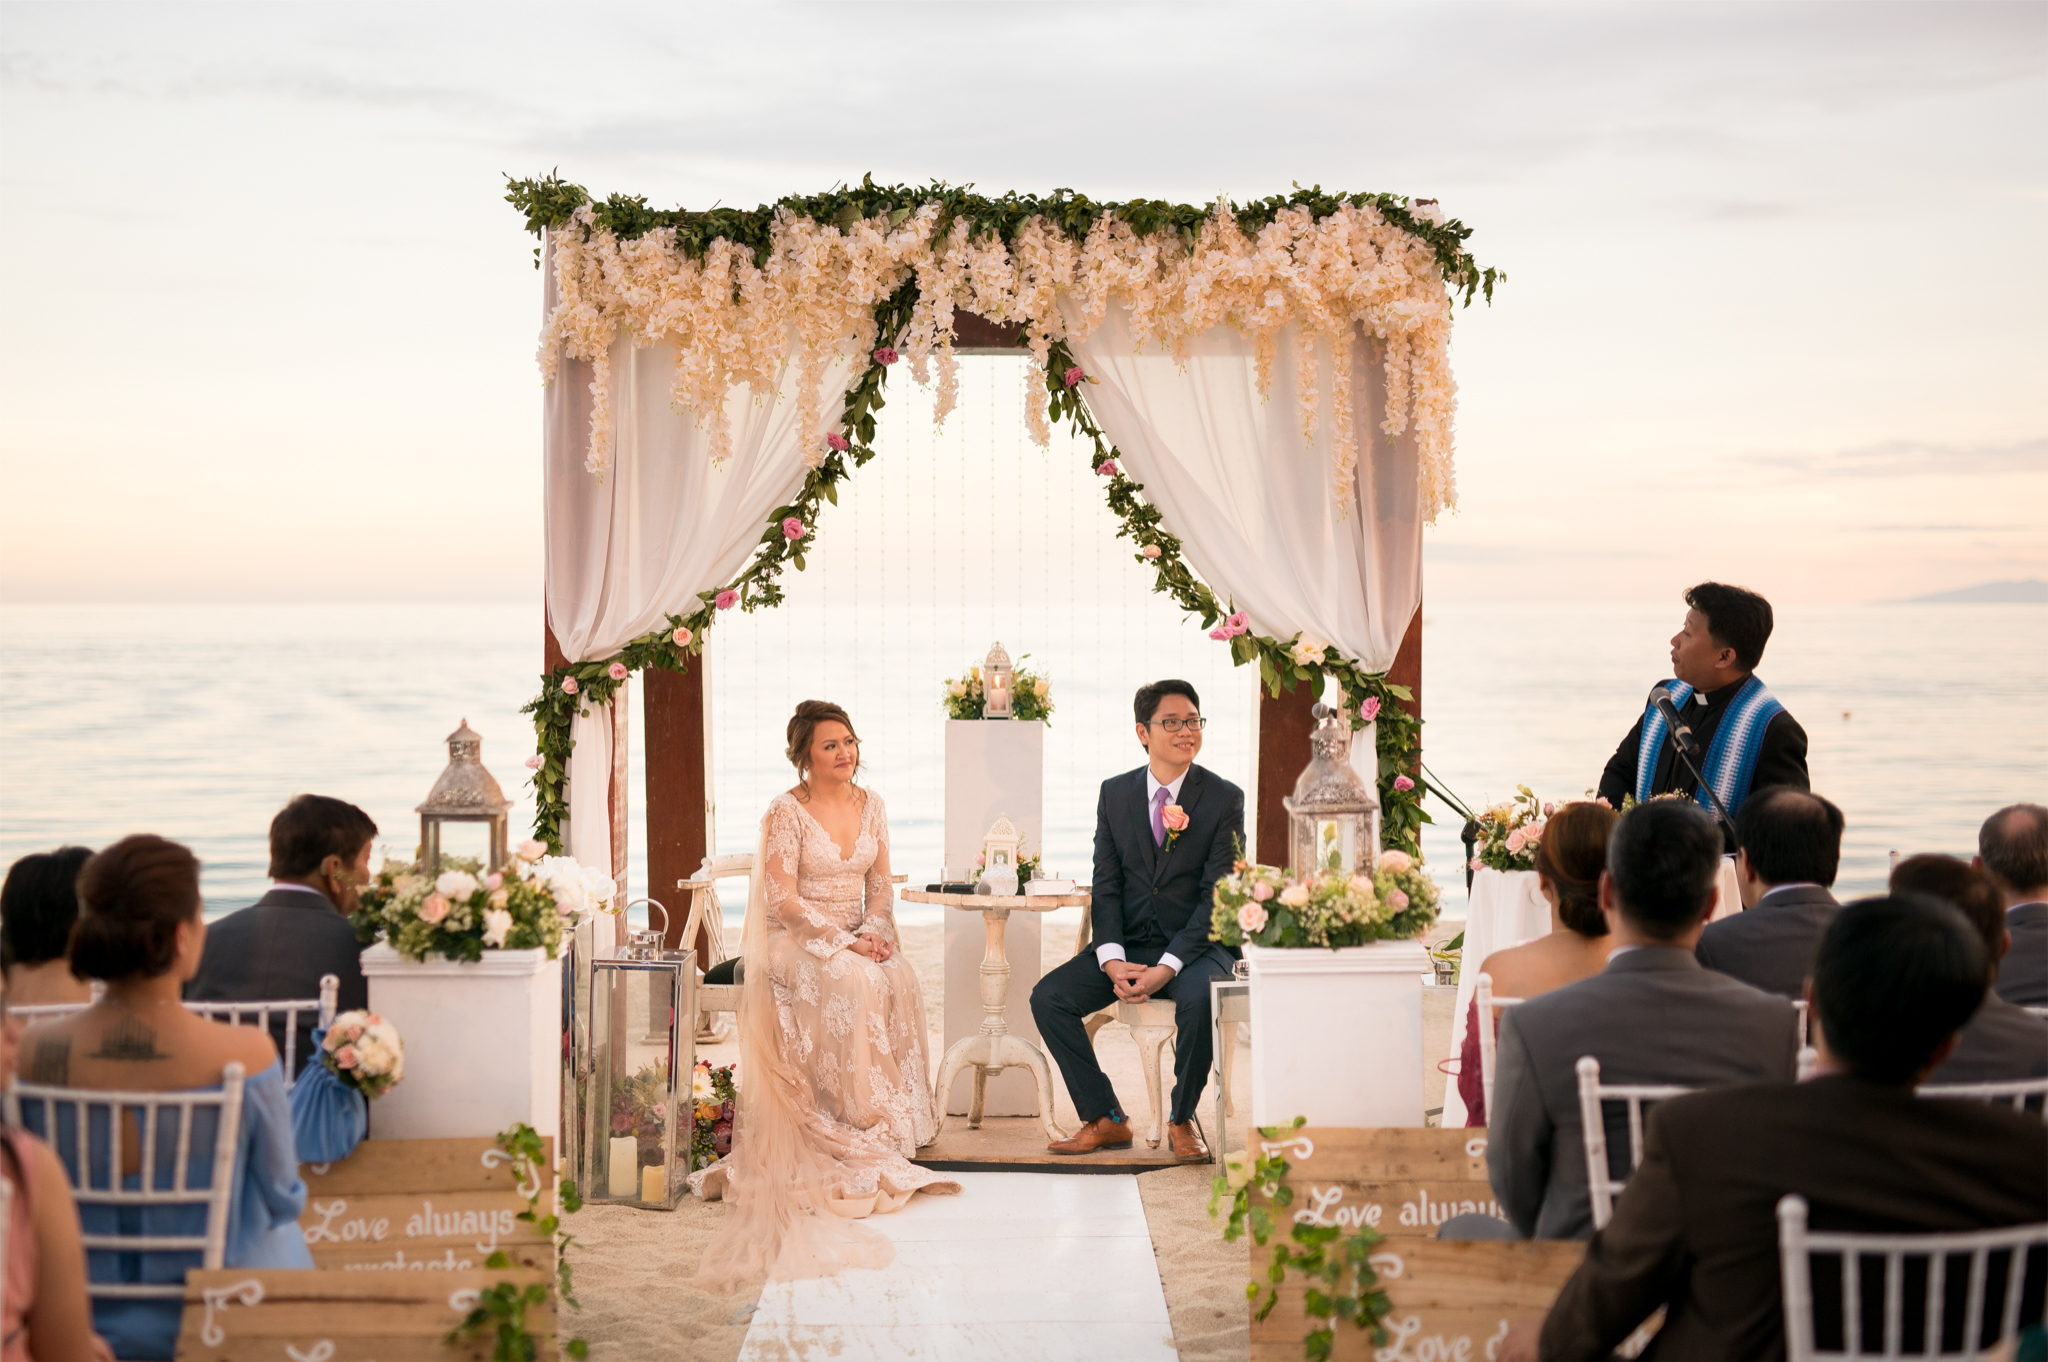 30 Wedding Ceremony Decorations Ideas Wedding Forward Wedding Beach Ceremony Beach Wedding Inspiration Beach Wedding Arch